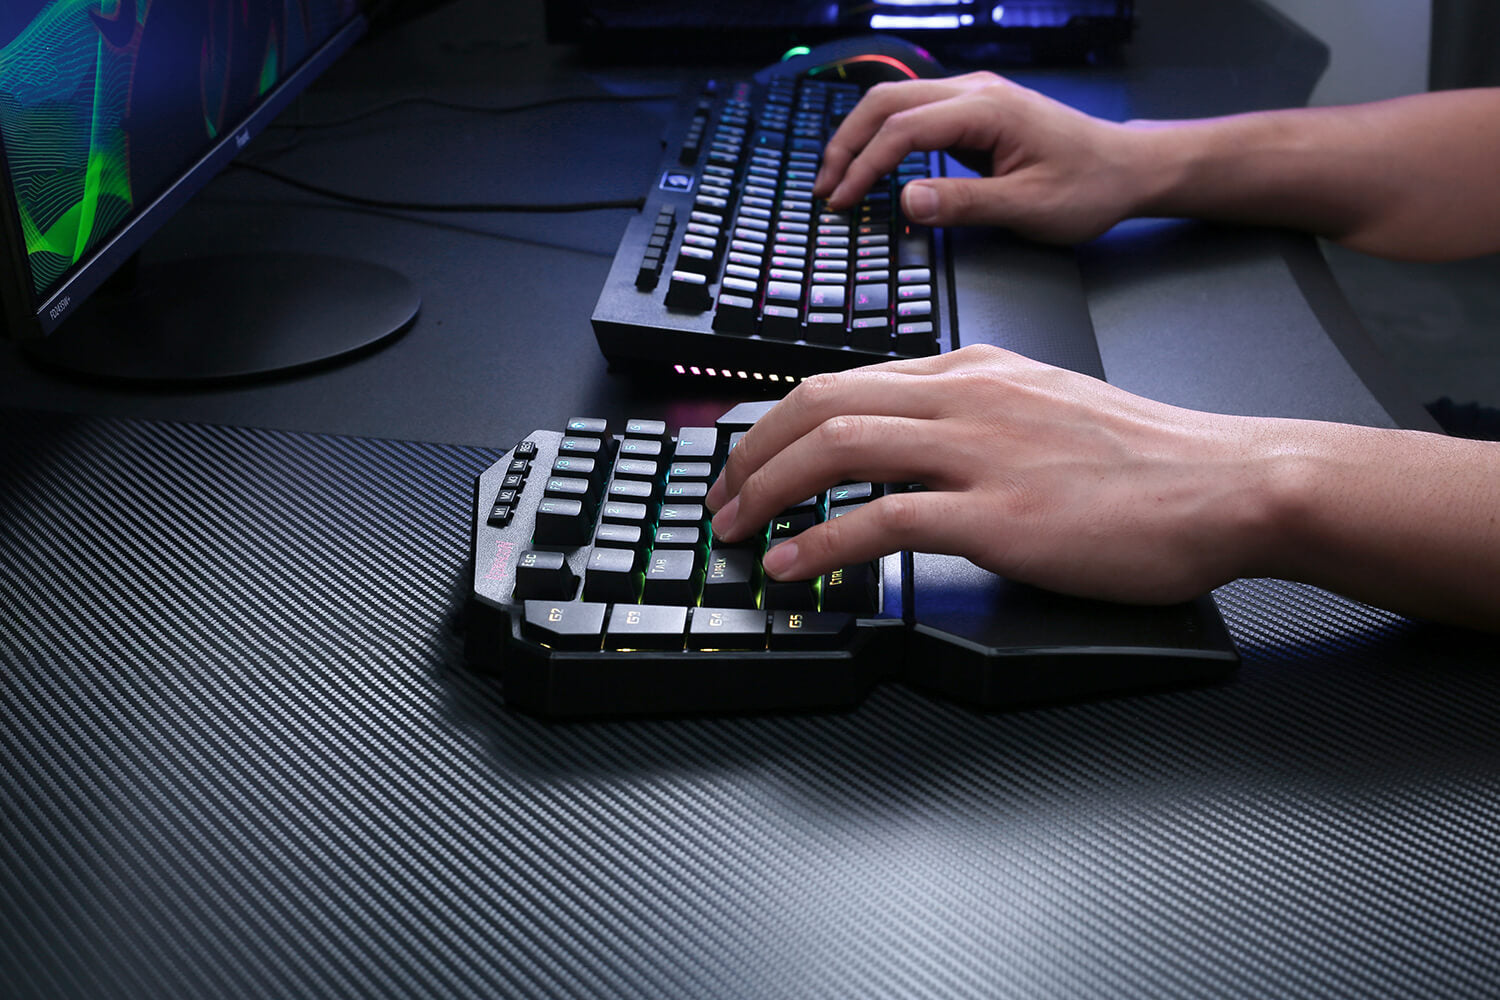 Wireless One Handed Keyboard